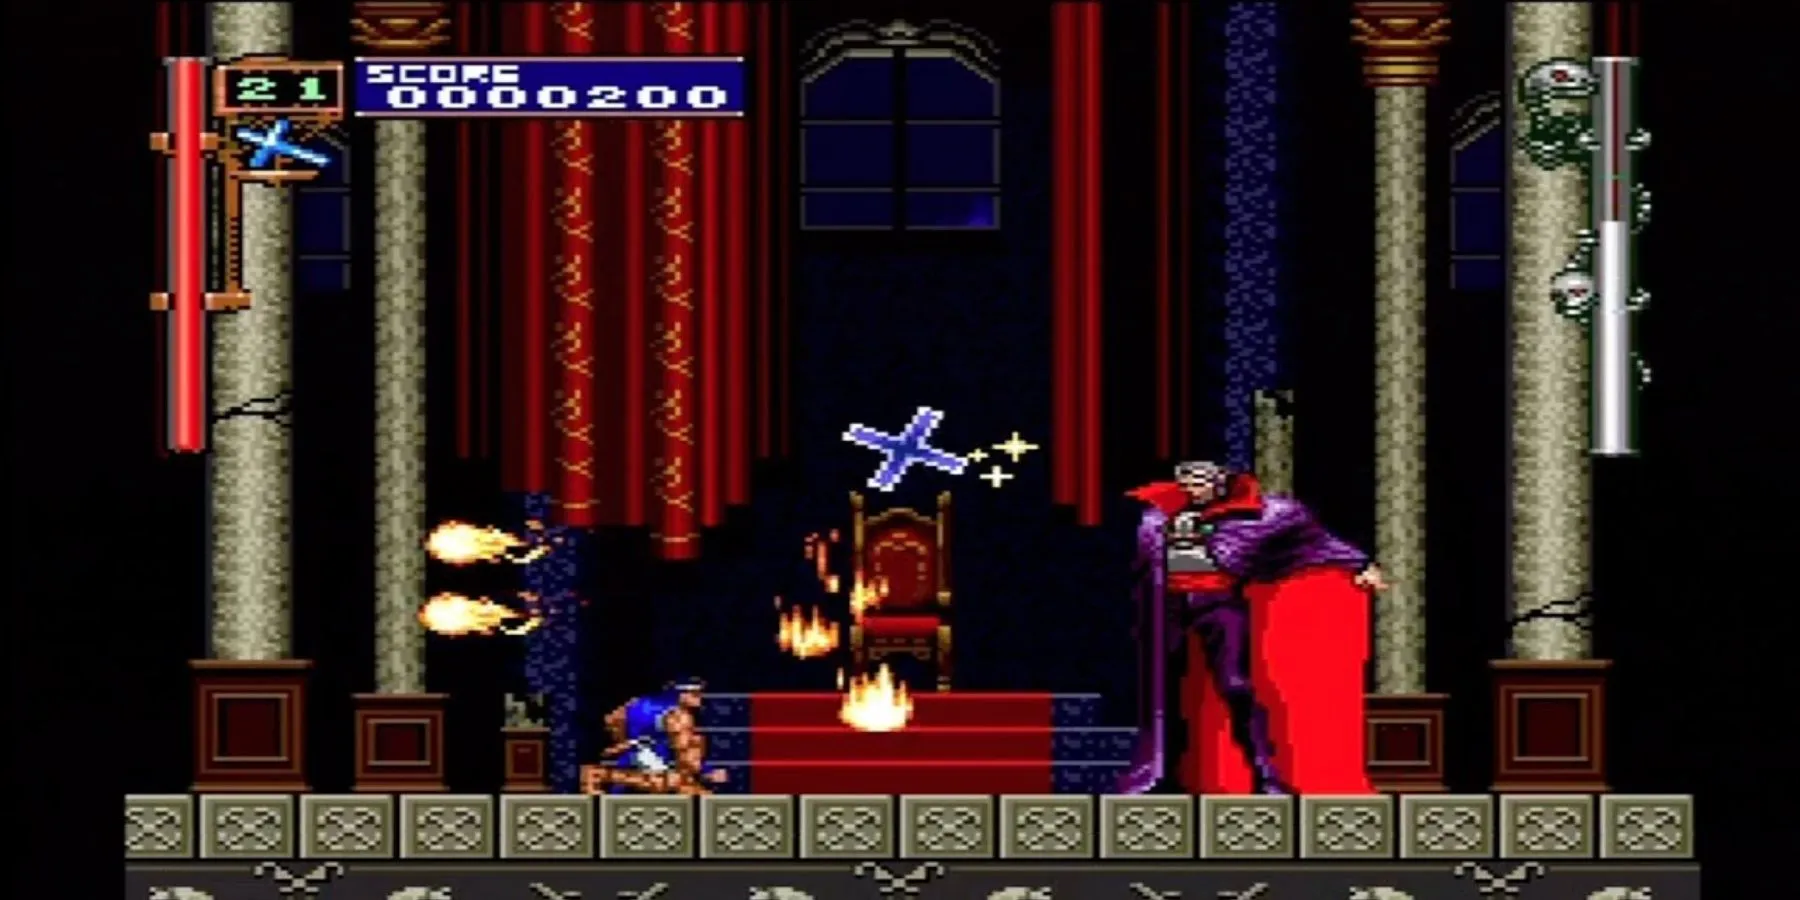 Richter Belmont affrontant Dracula